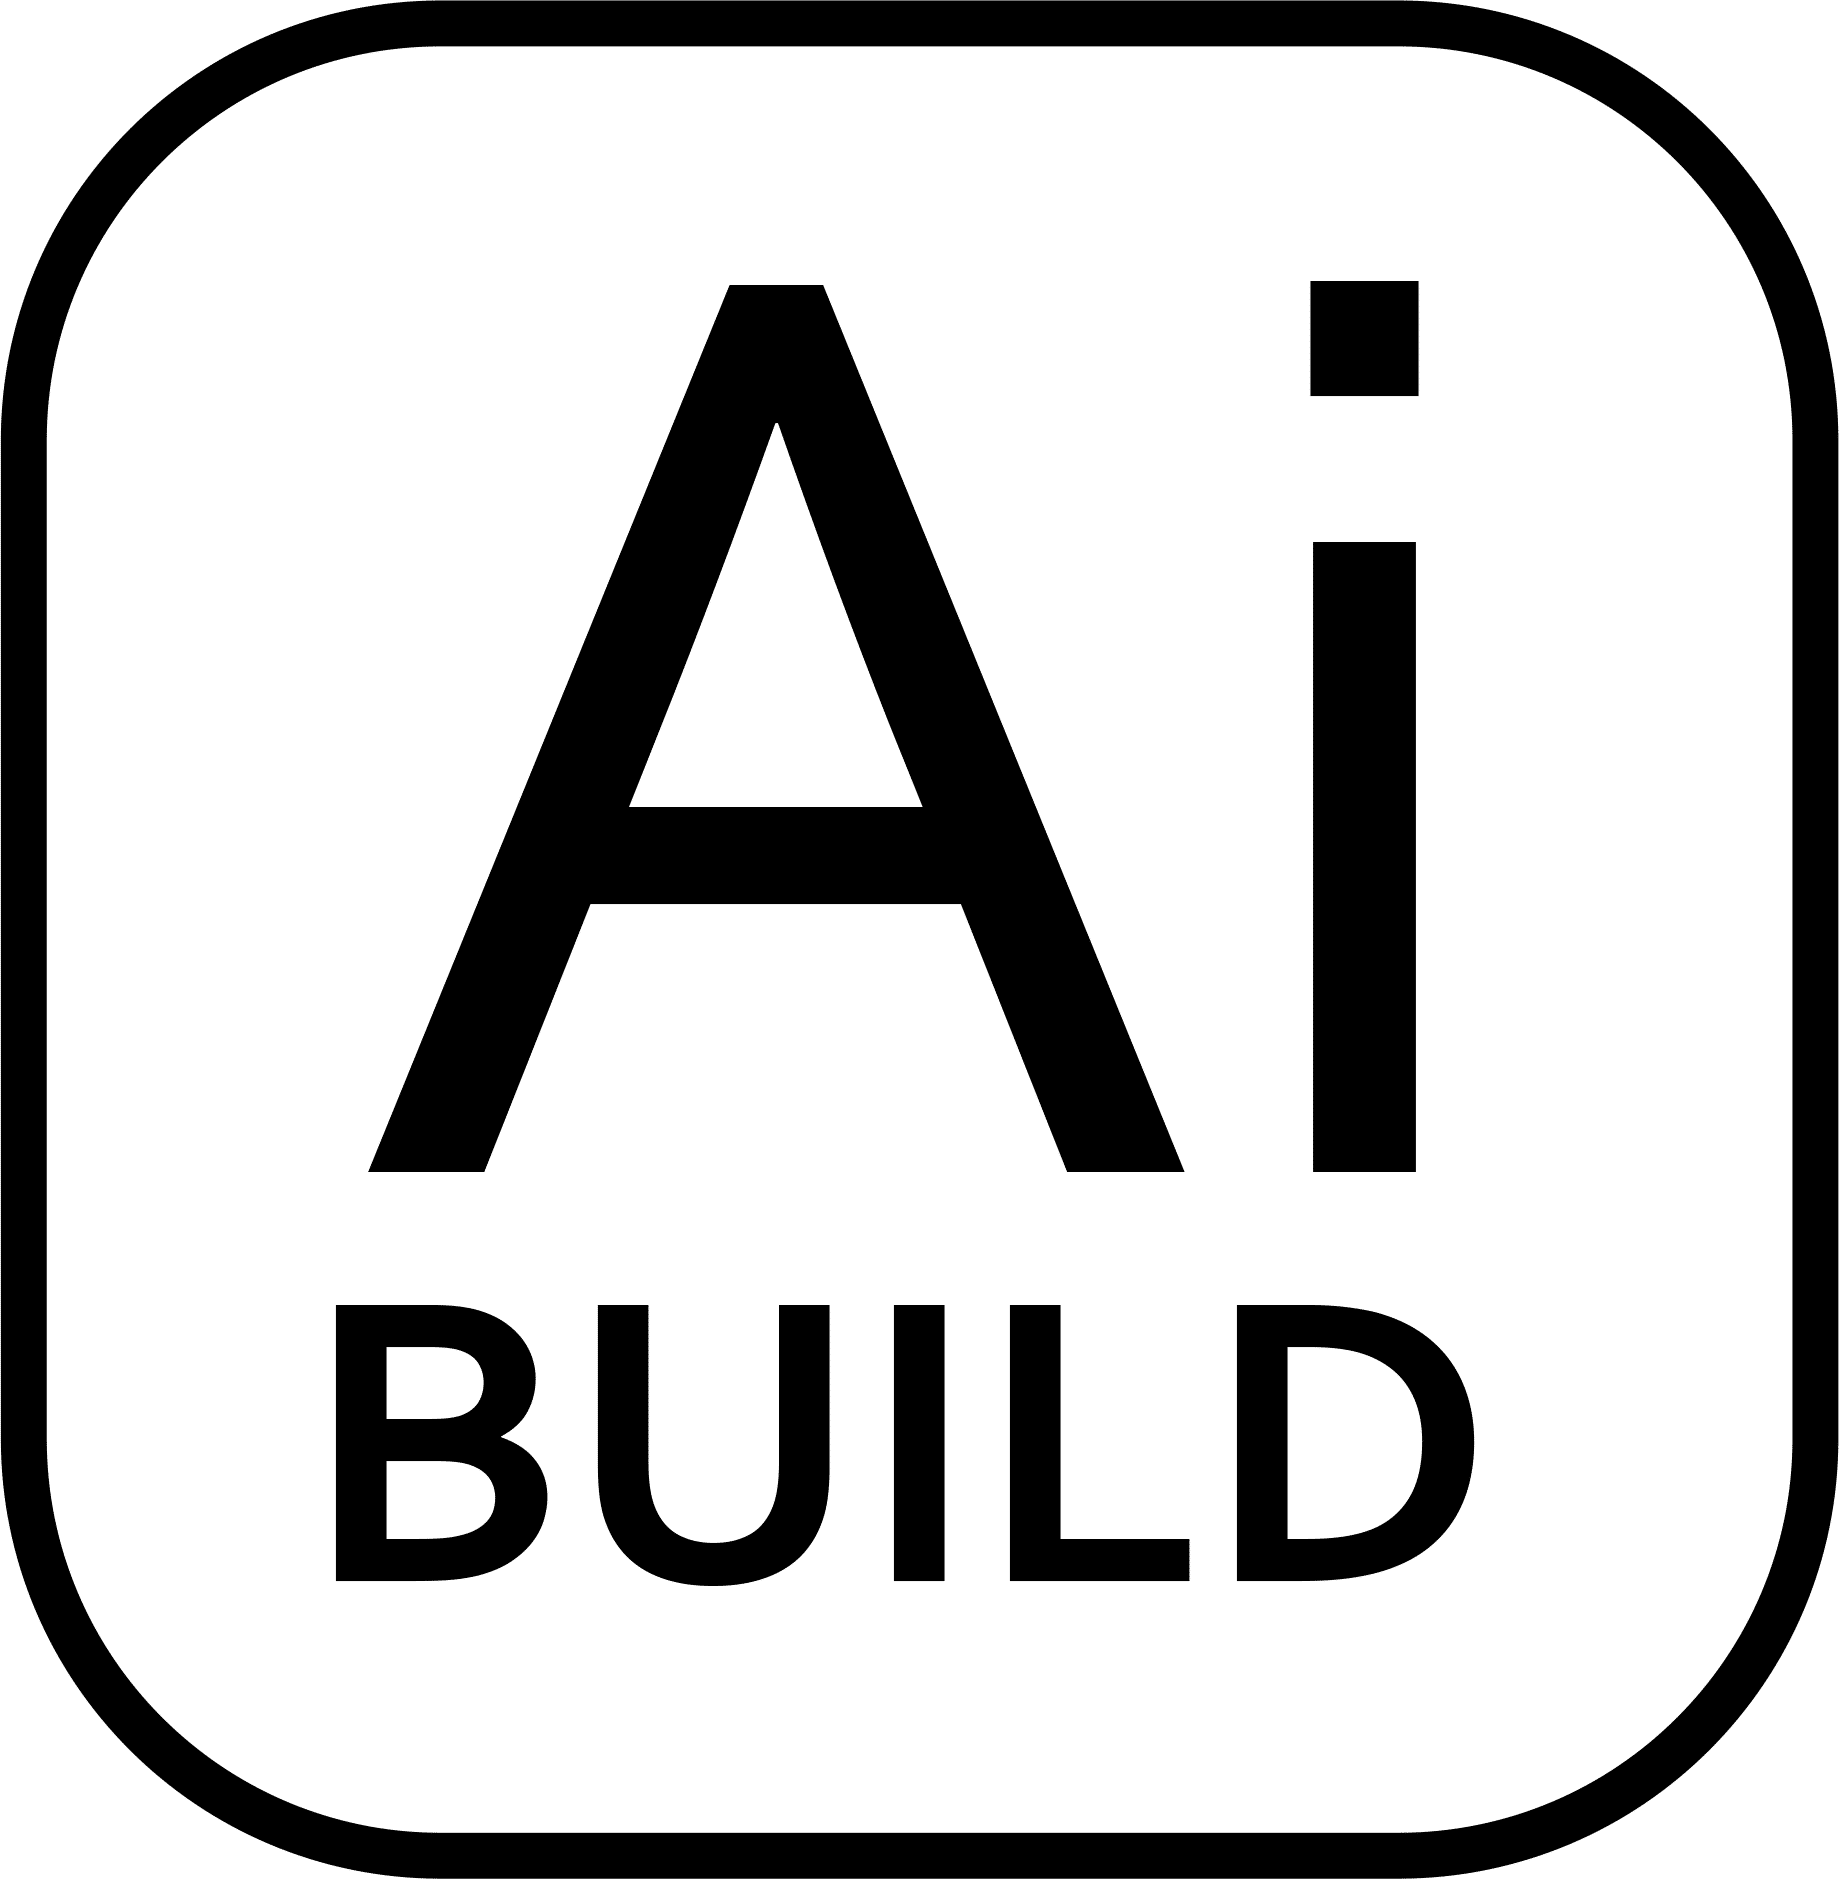 AI Build